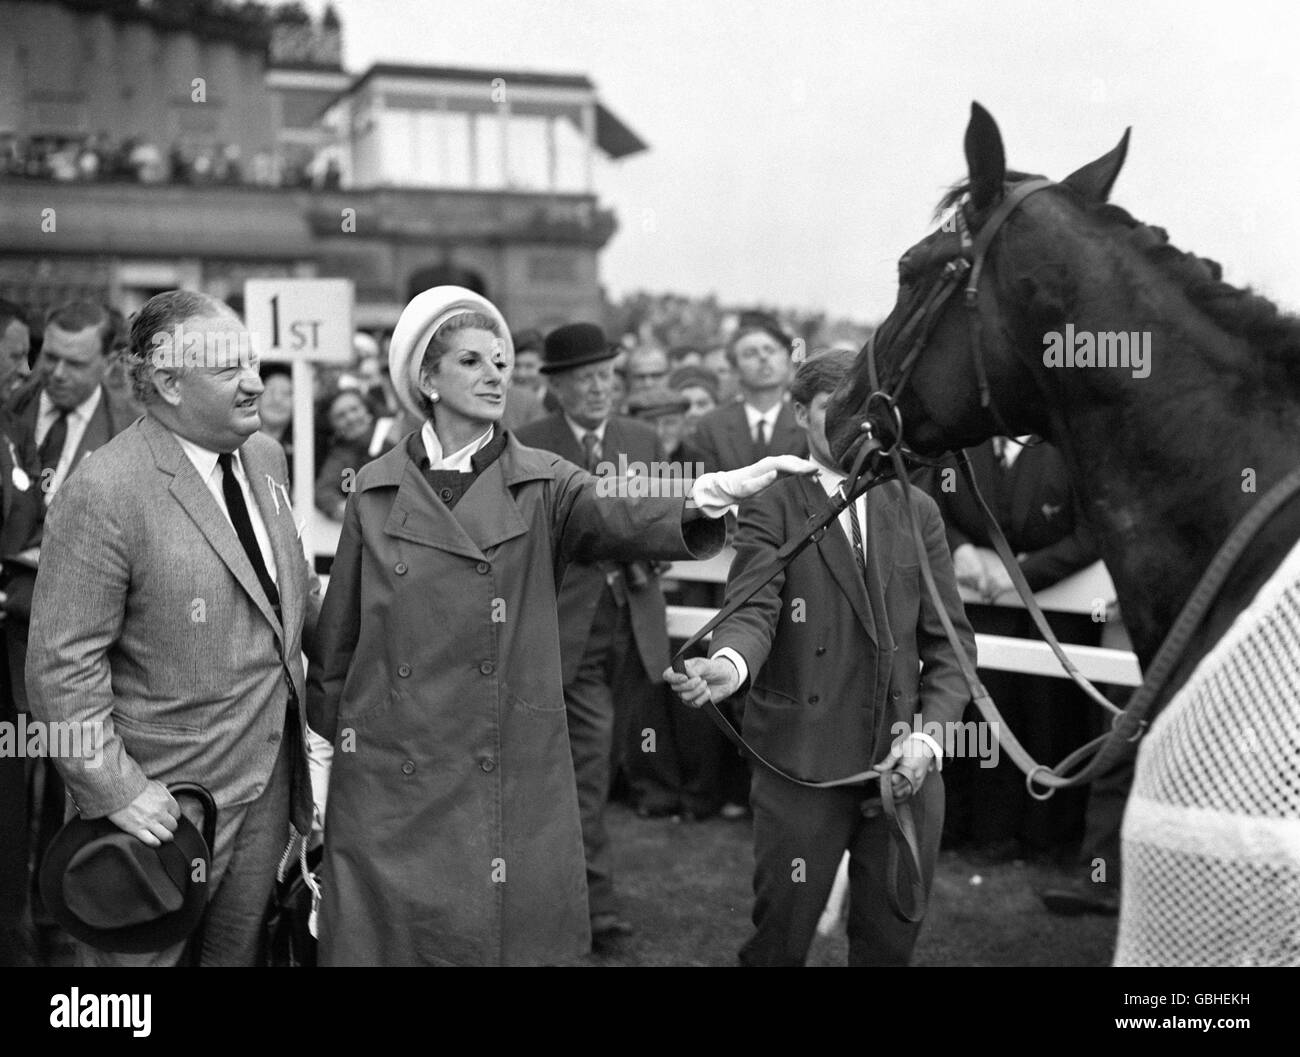 Corse di cavalli - St Leger Stakes - Ippodromo di Doncaster. Il proprietario di 'Indiana', Charles W. Engelhard, e sua moglie Jane, nel recinto unsaddling dopo la vittoria del St. Leger. Foto Stock